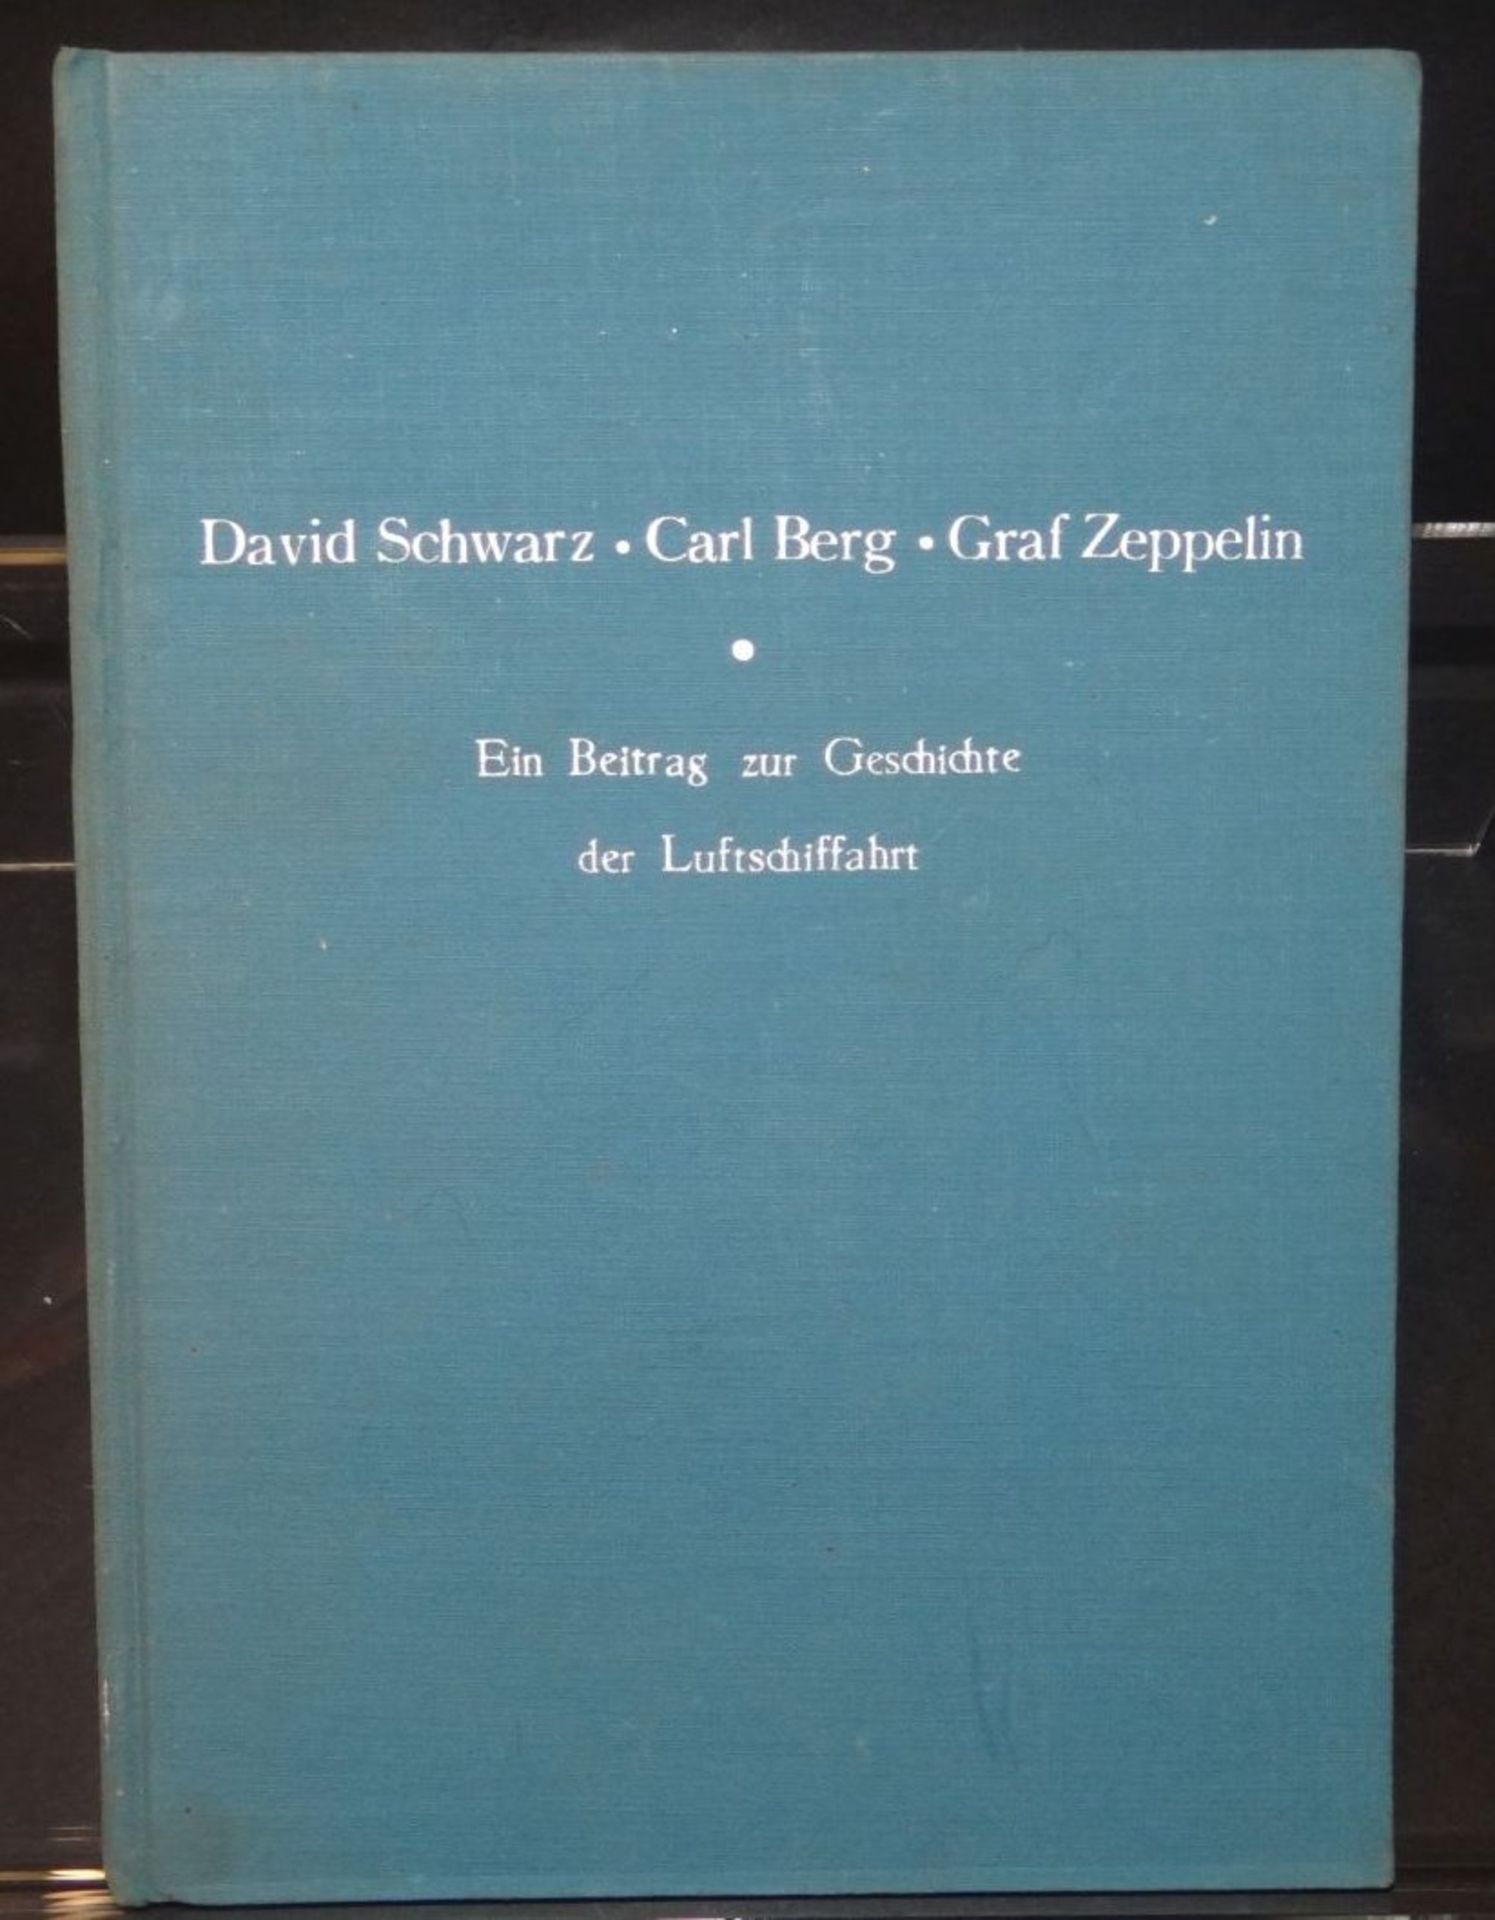 "Ein Beitrag zur Geschichte der Luftschiffahrt" 1953", David Schwarz, Carl Berg, Graf Zeppelin- - -